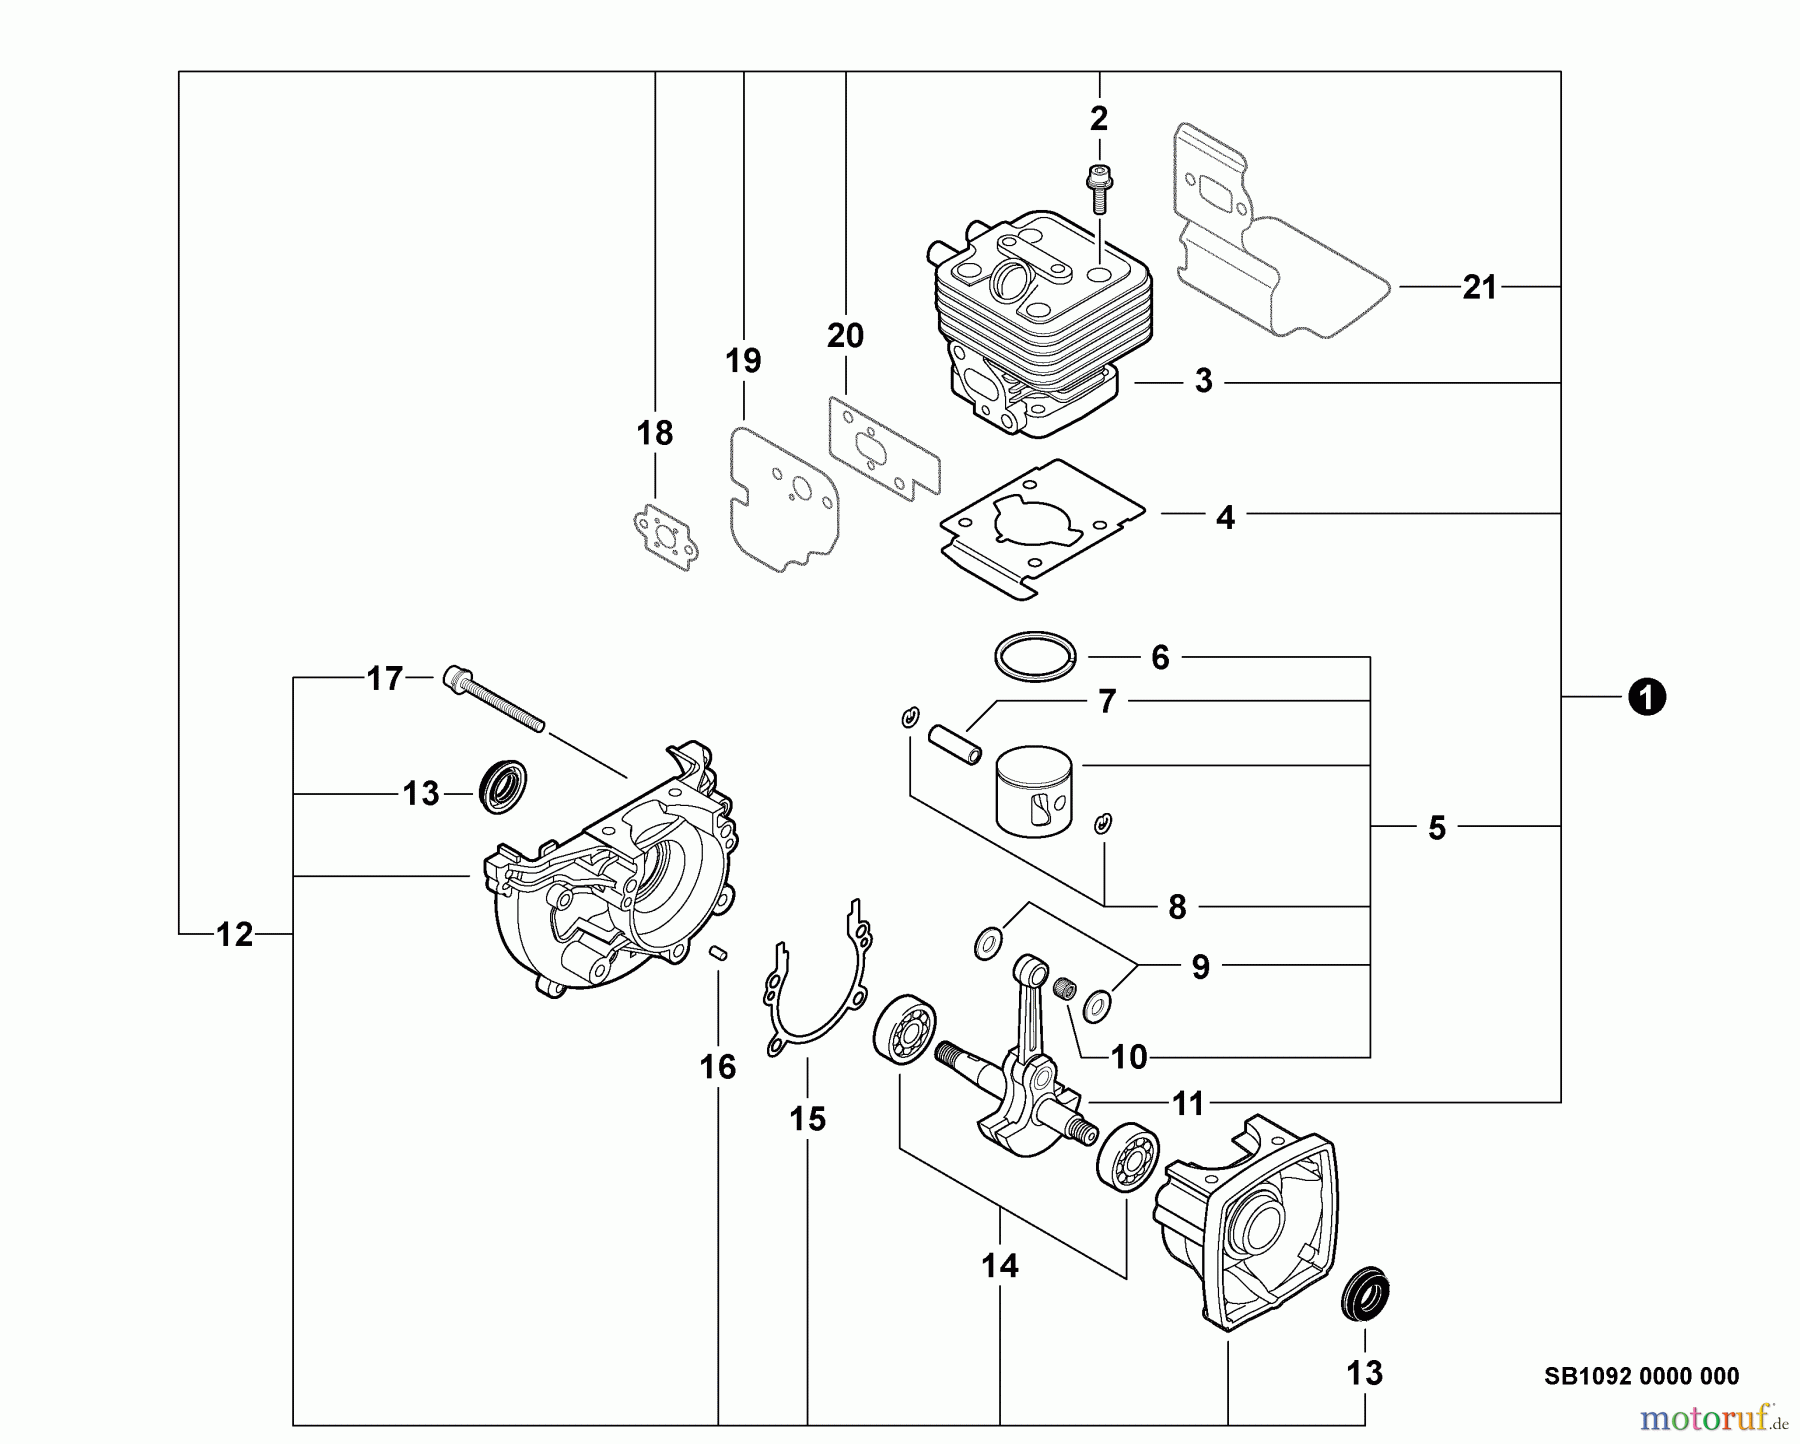  Echo Bläser / Sauger / Häcksler / Mulchgeräte	 PB-265LN - Echo Blower/Vacuums, S/N: P35312001001 - P35312999999 Engine, Short Block -- SB1092